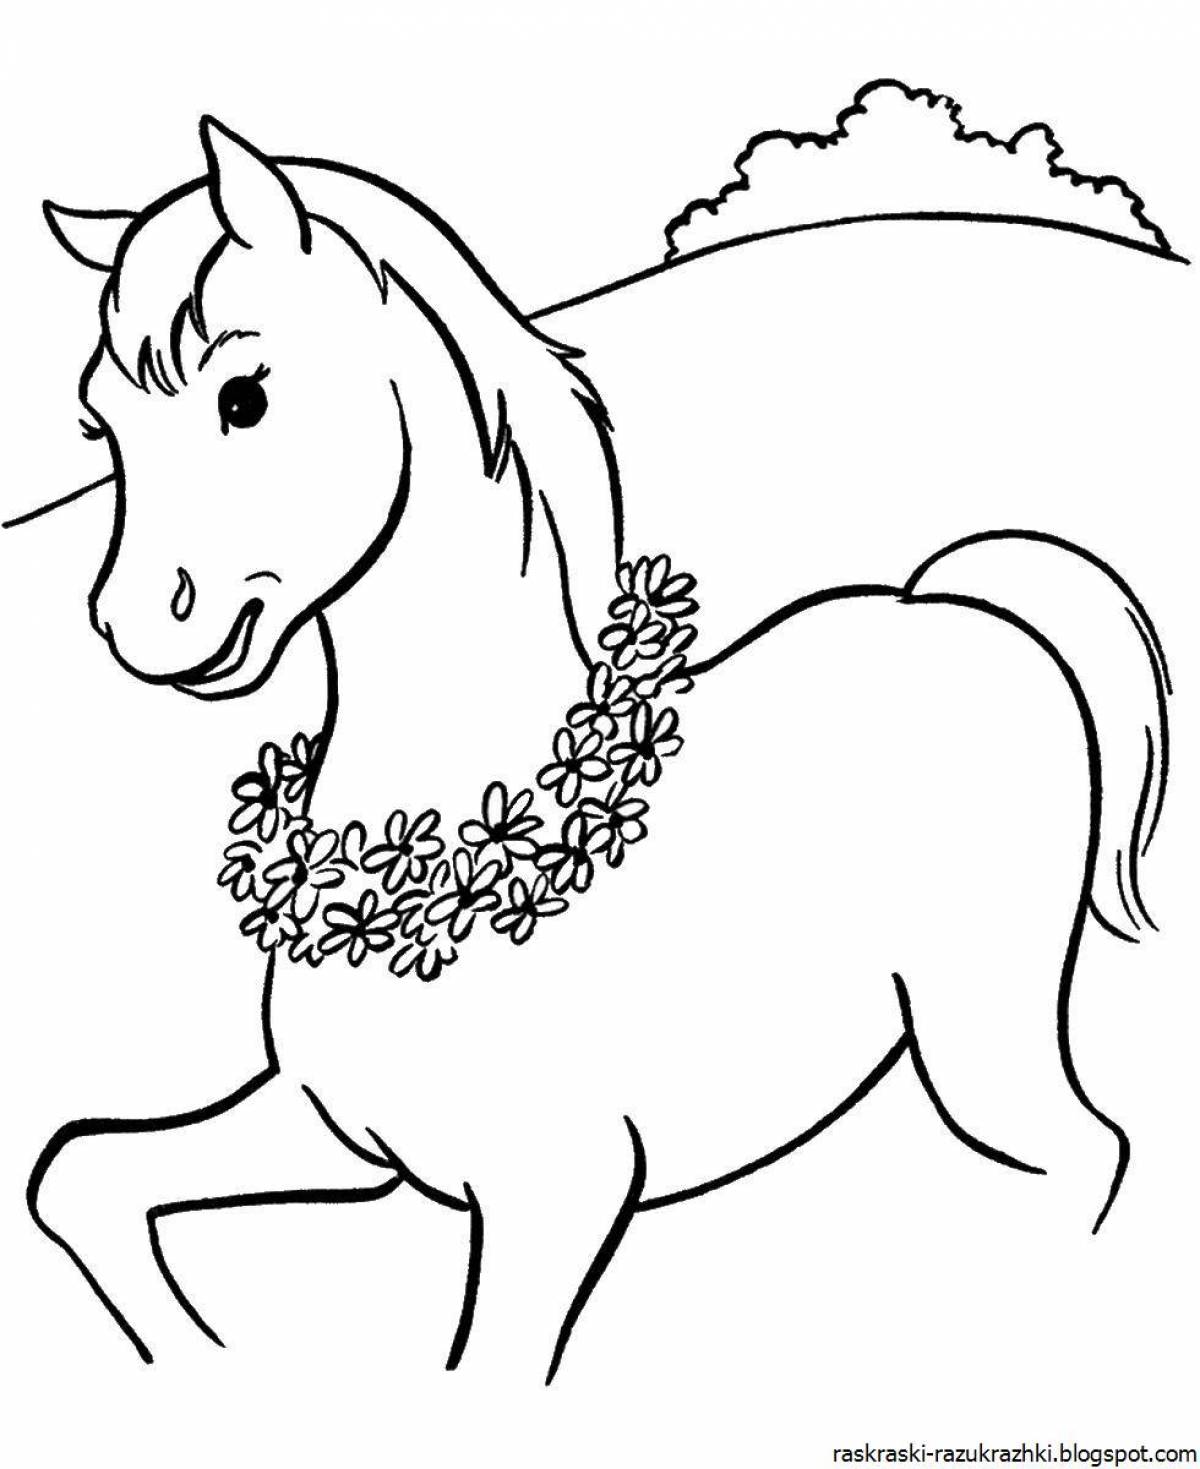 Ferocious horse coloring book